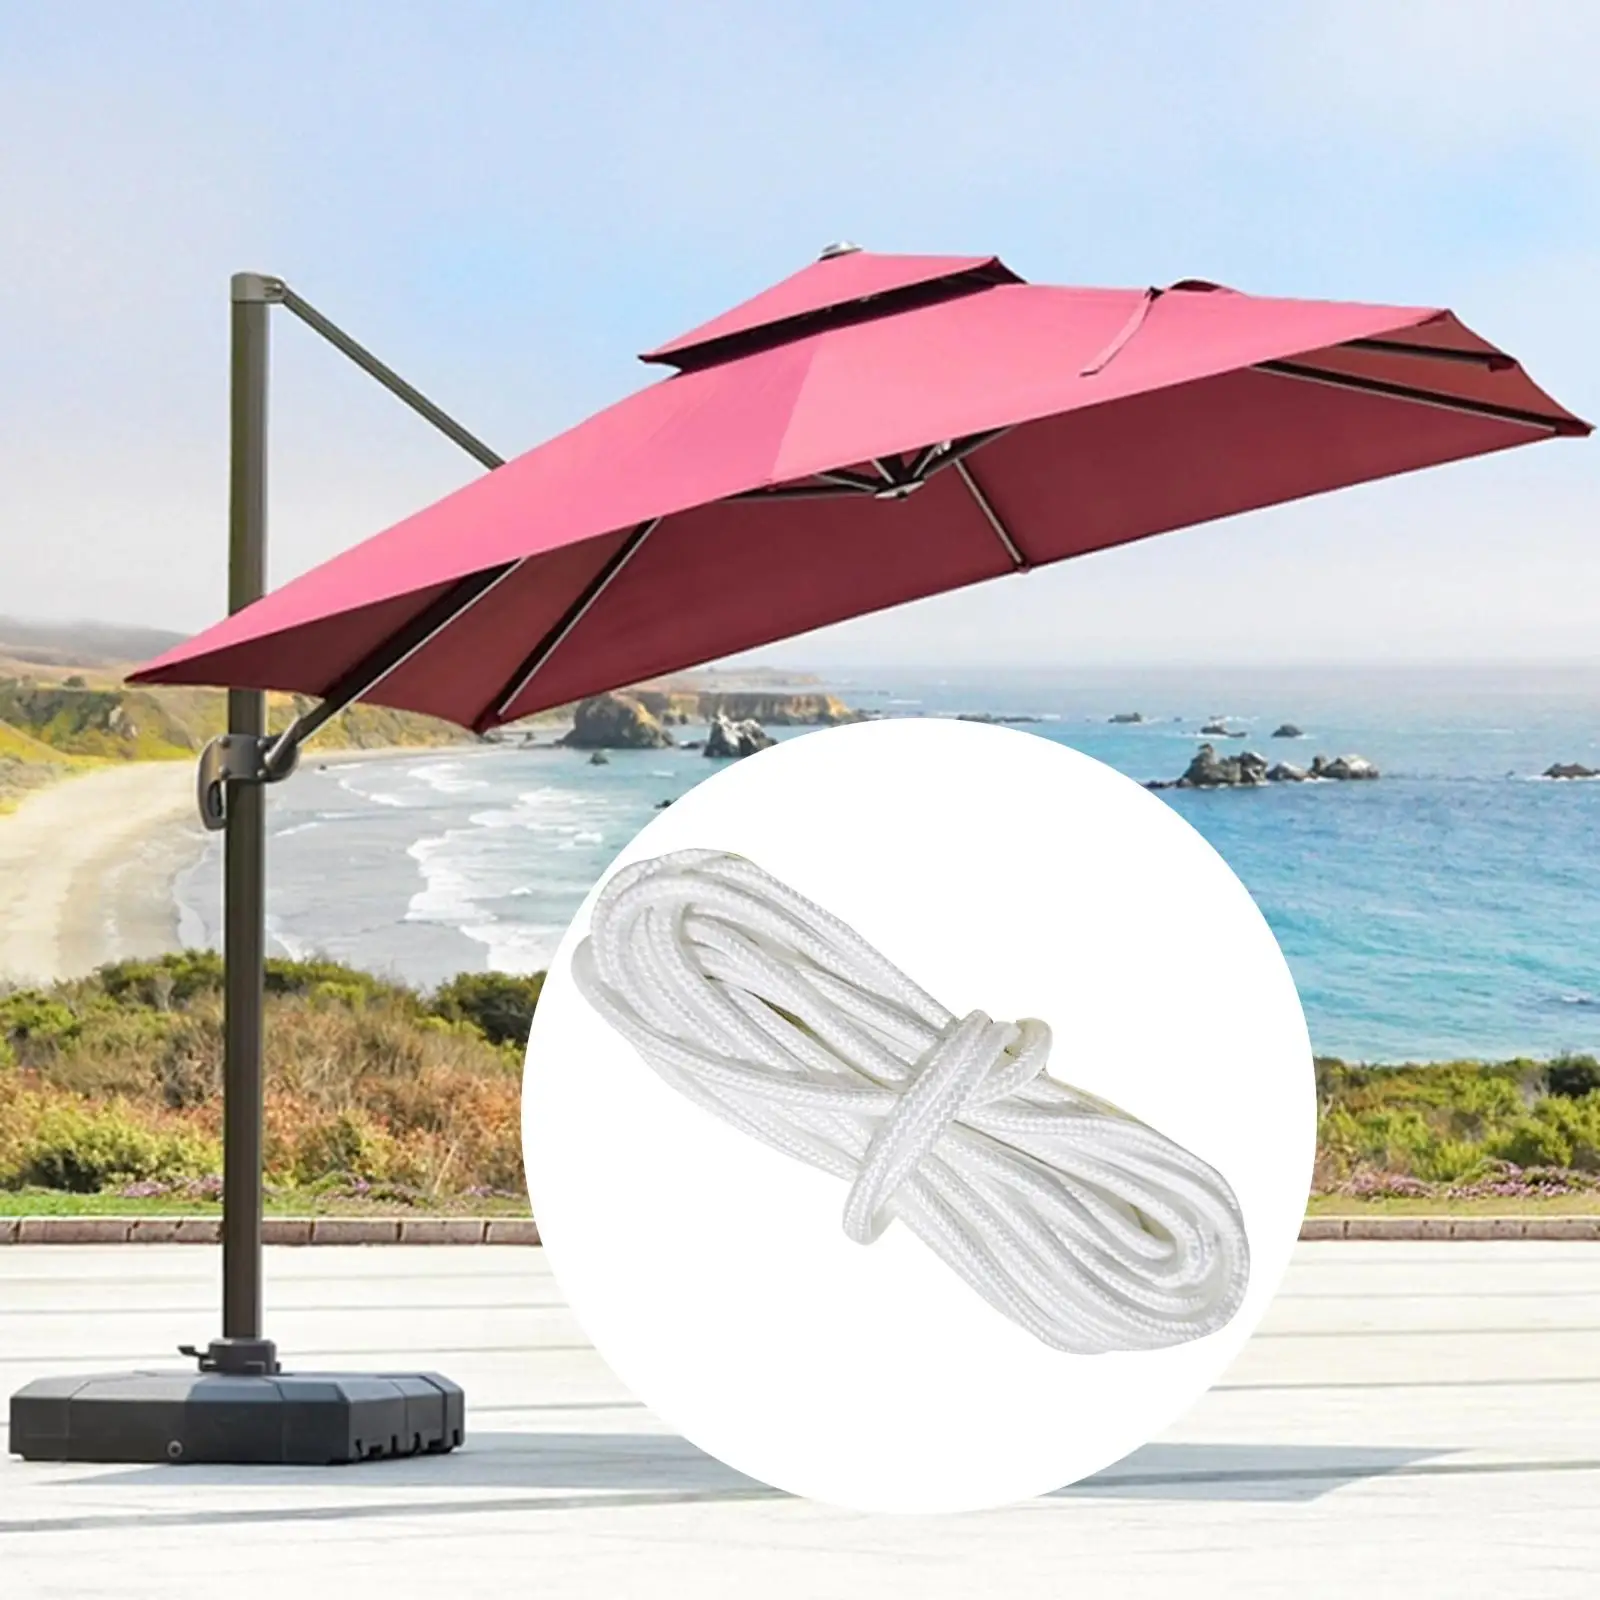 Patio Umbrella Cord Replacement Portable Patio Umbrella Accessories Patio Umbrella Cord Line for Patio Table Picnic Deck Beach